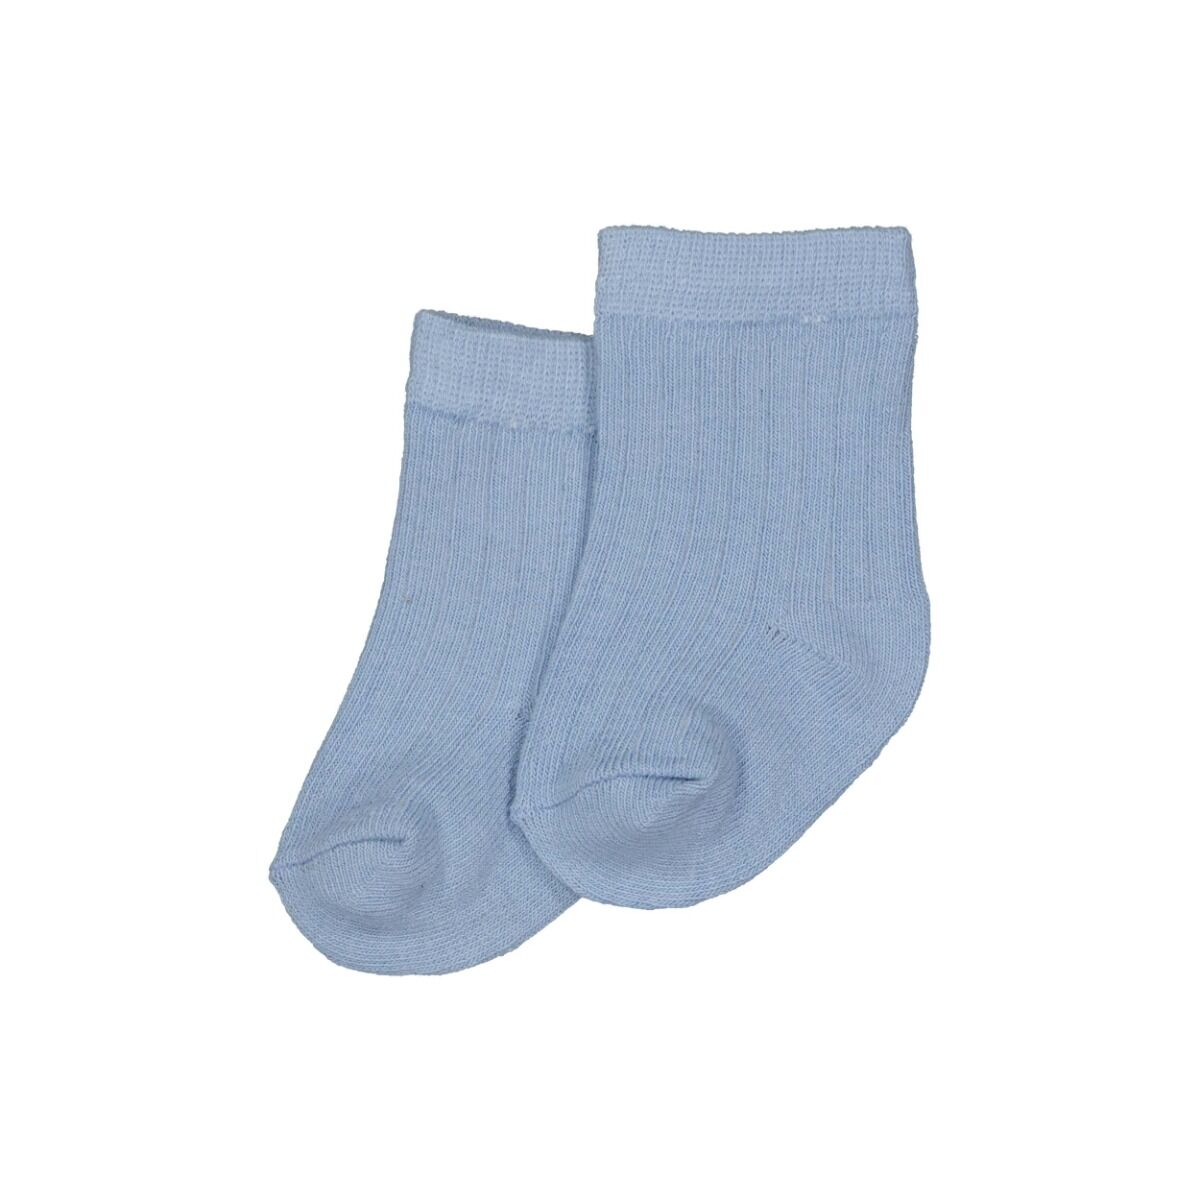 Levv ! Jongens Sok -- Lichtblauw Katoen/polyester/elasthan online kopen